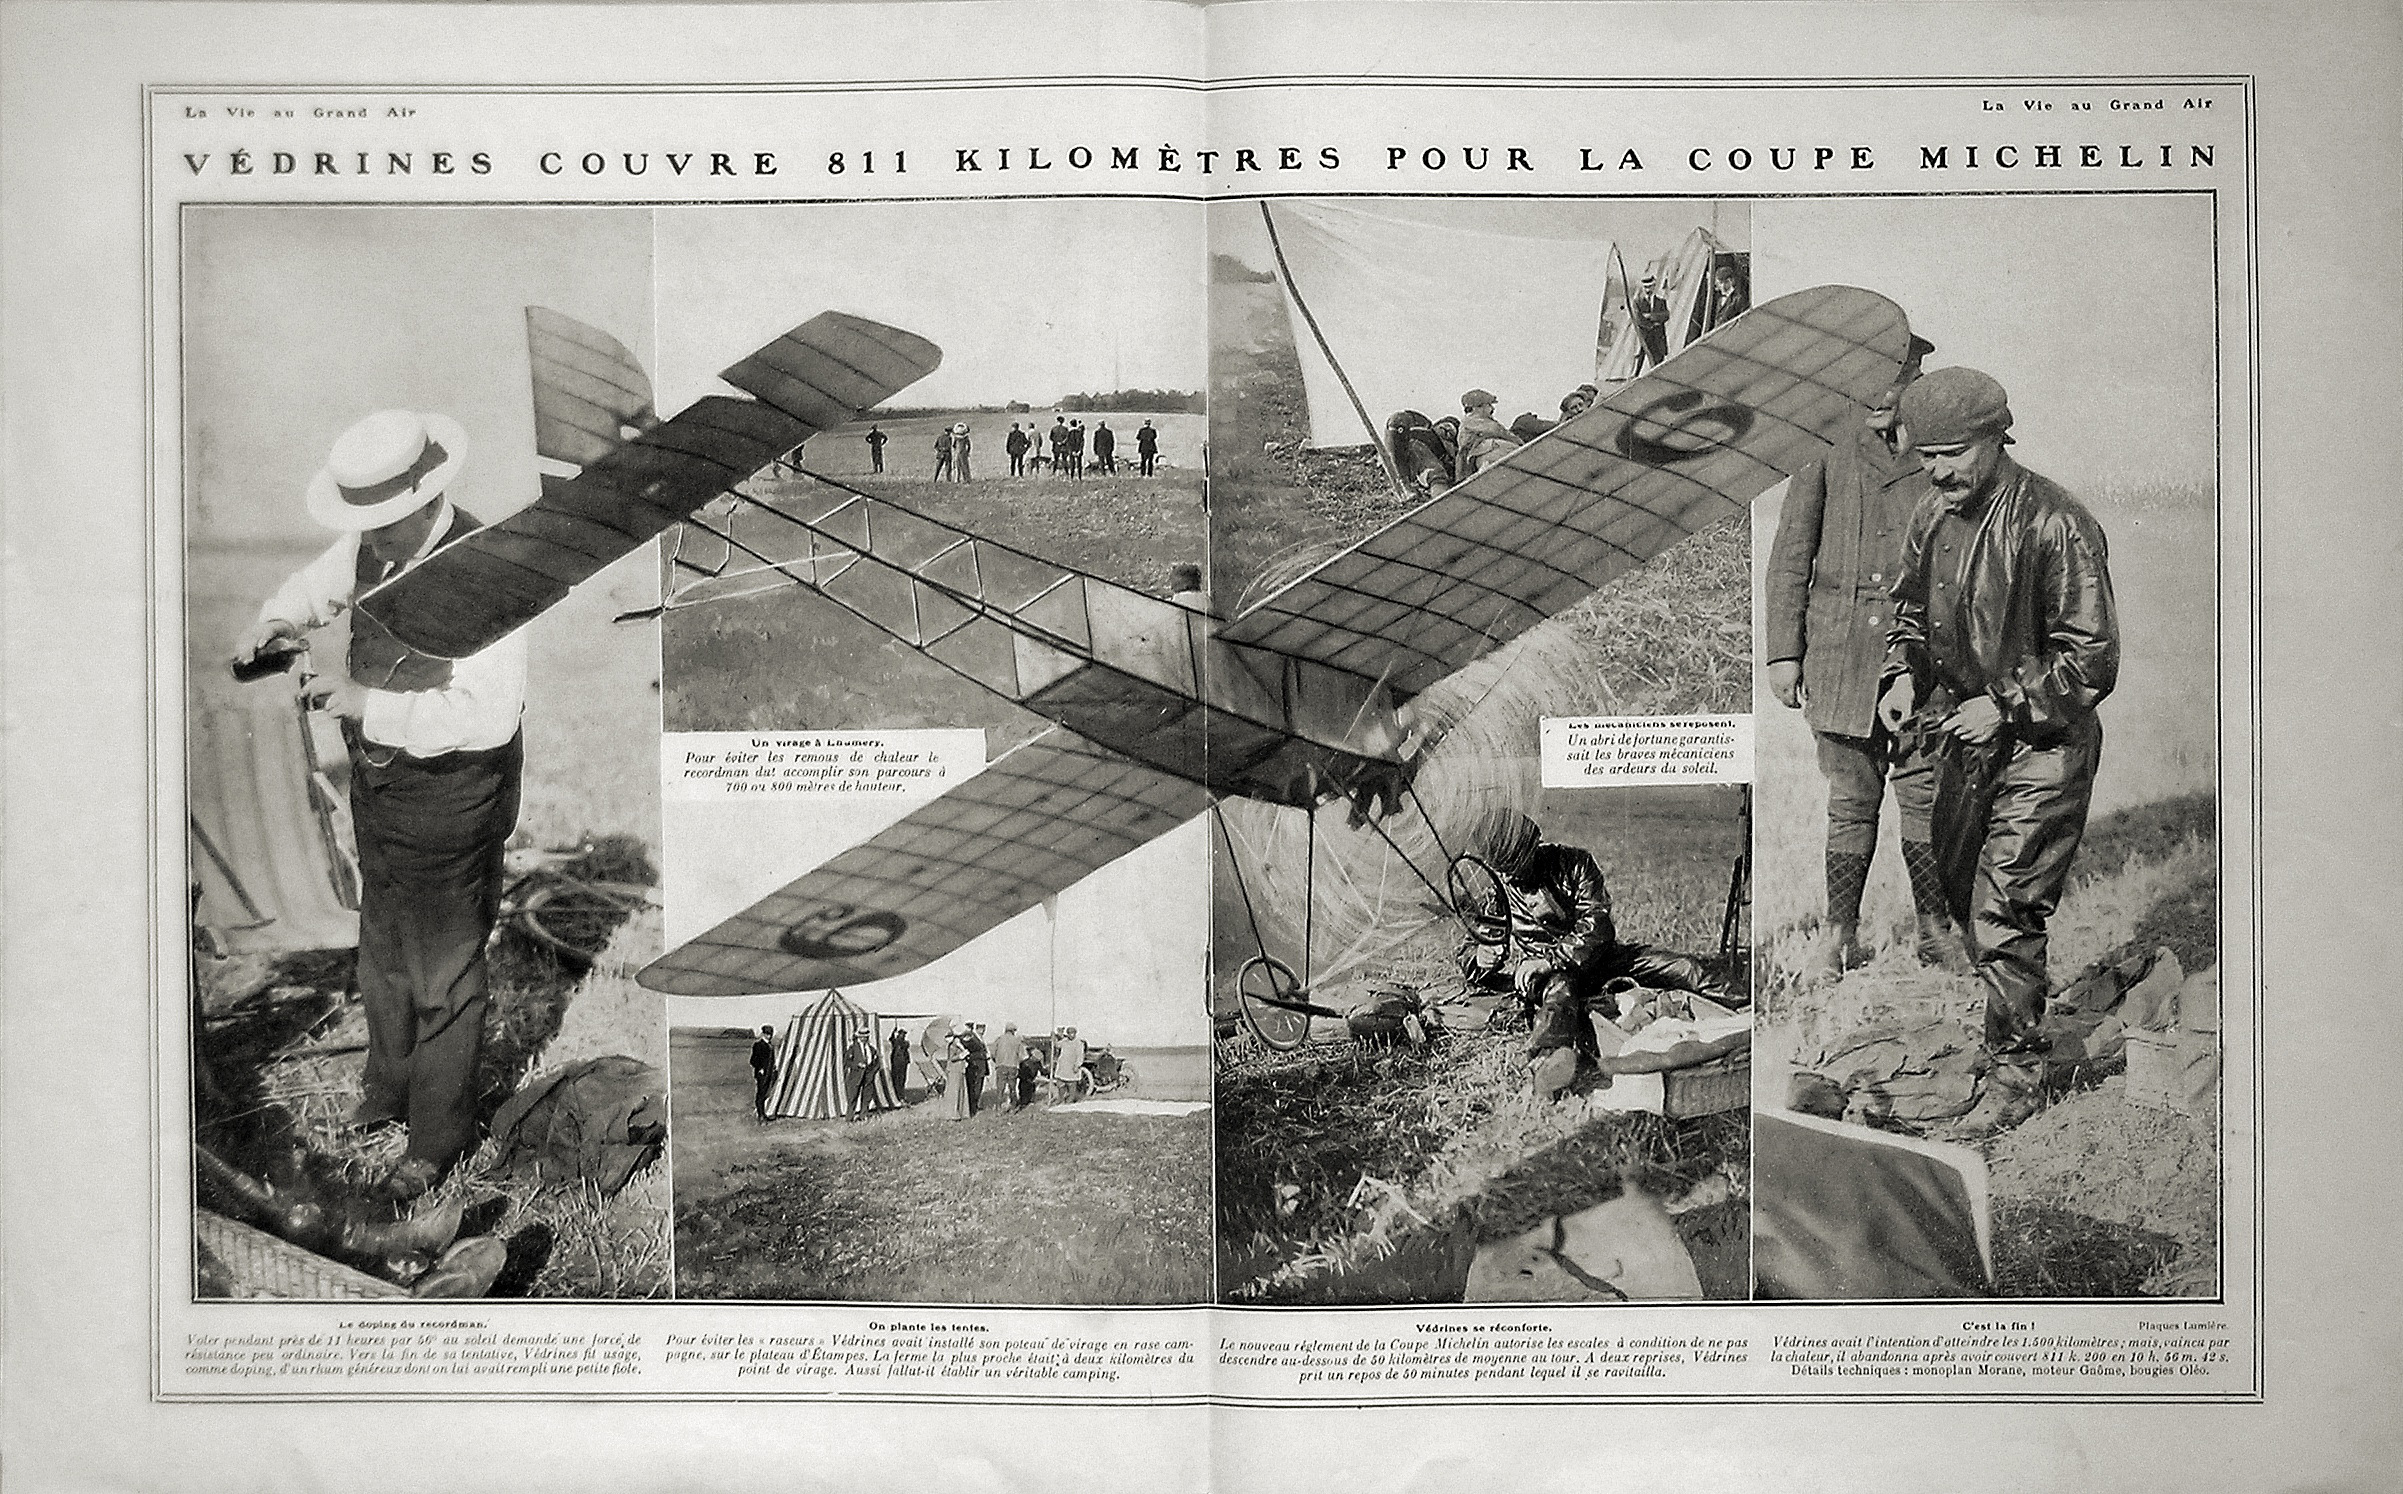 Fig. 11: Auteur inconnu. 1911. «Coupe Michelin»
Source: La Vie au grand air, 19 août 1911, n° 674, p. 556-557
